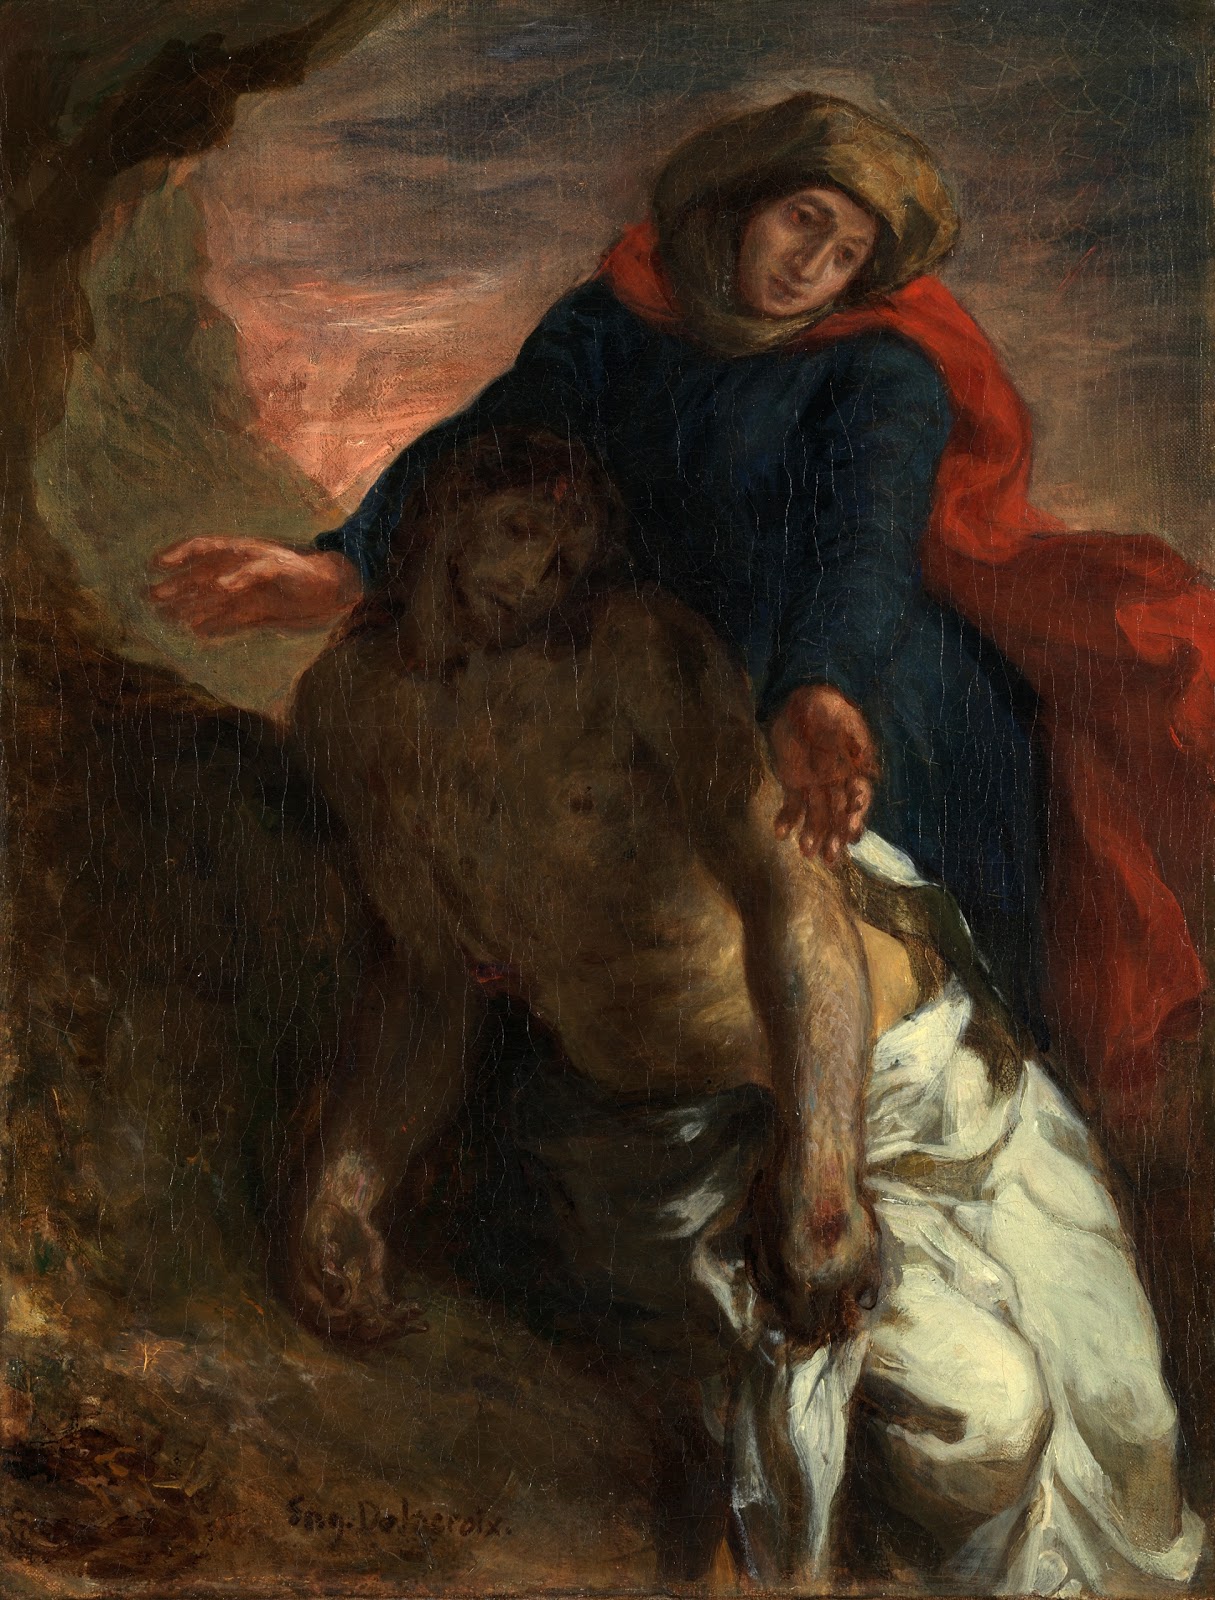 Eugene+Delacroix-1798-1863 (183).jpg